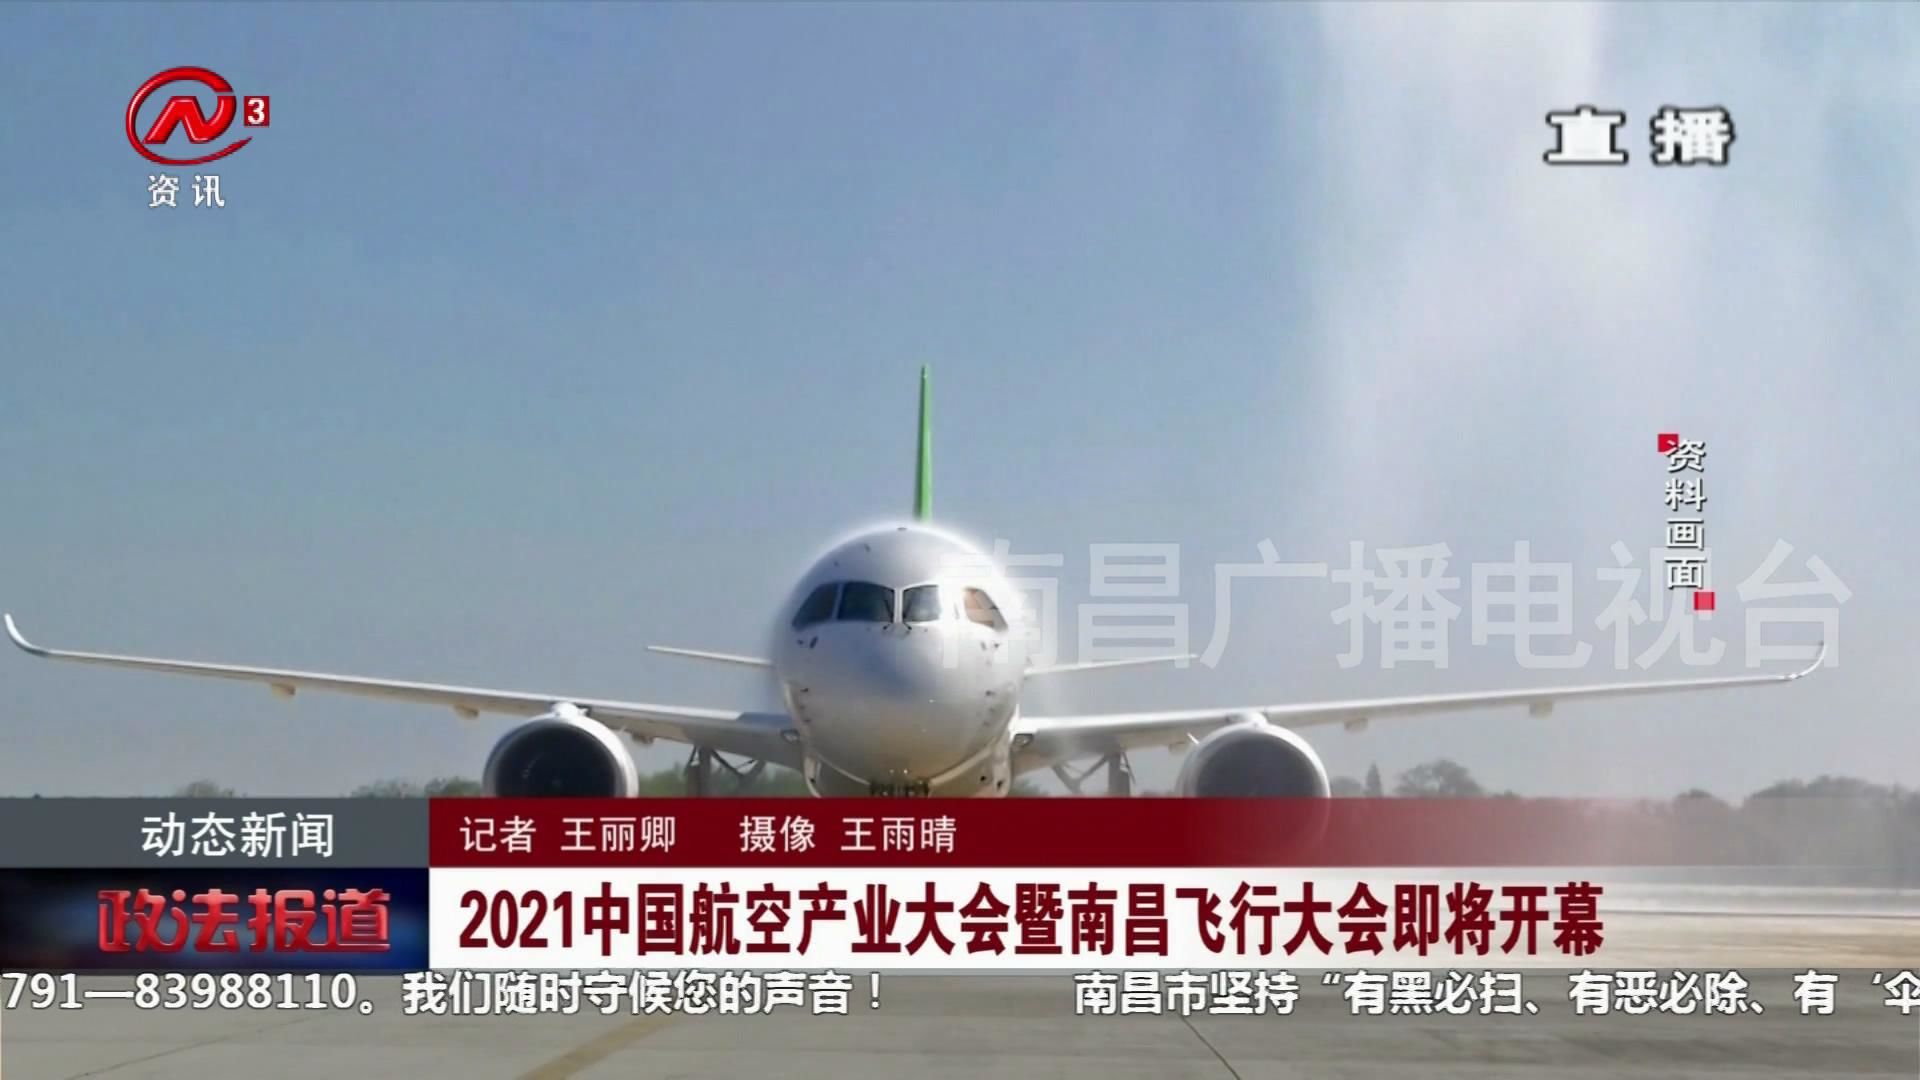 2021中国航空产业大会暨南昌飞行大会即将开幕